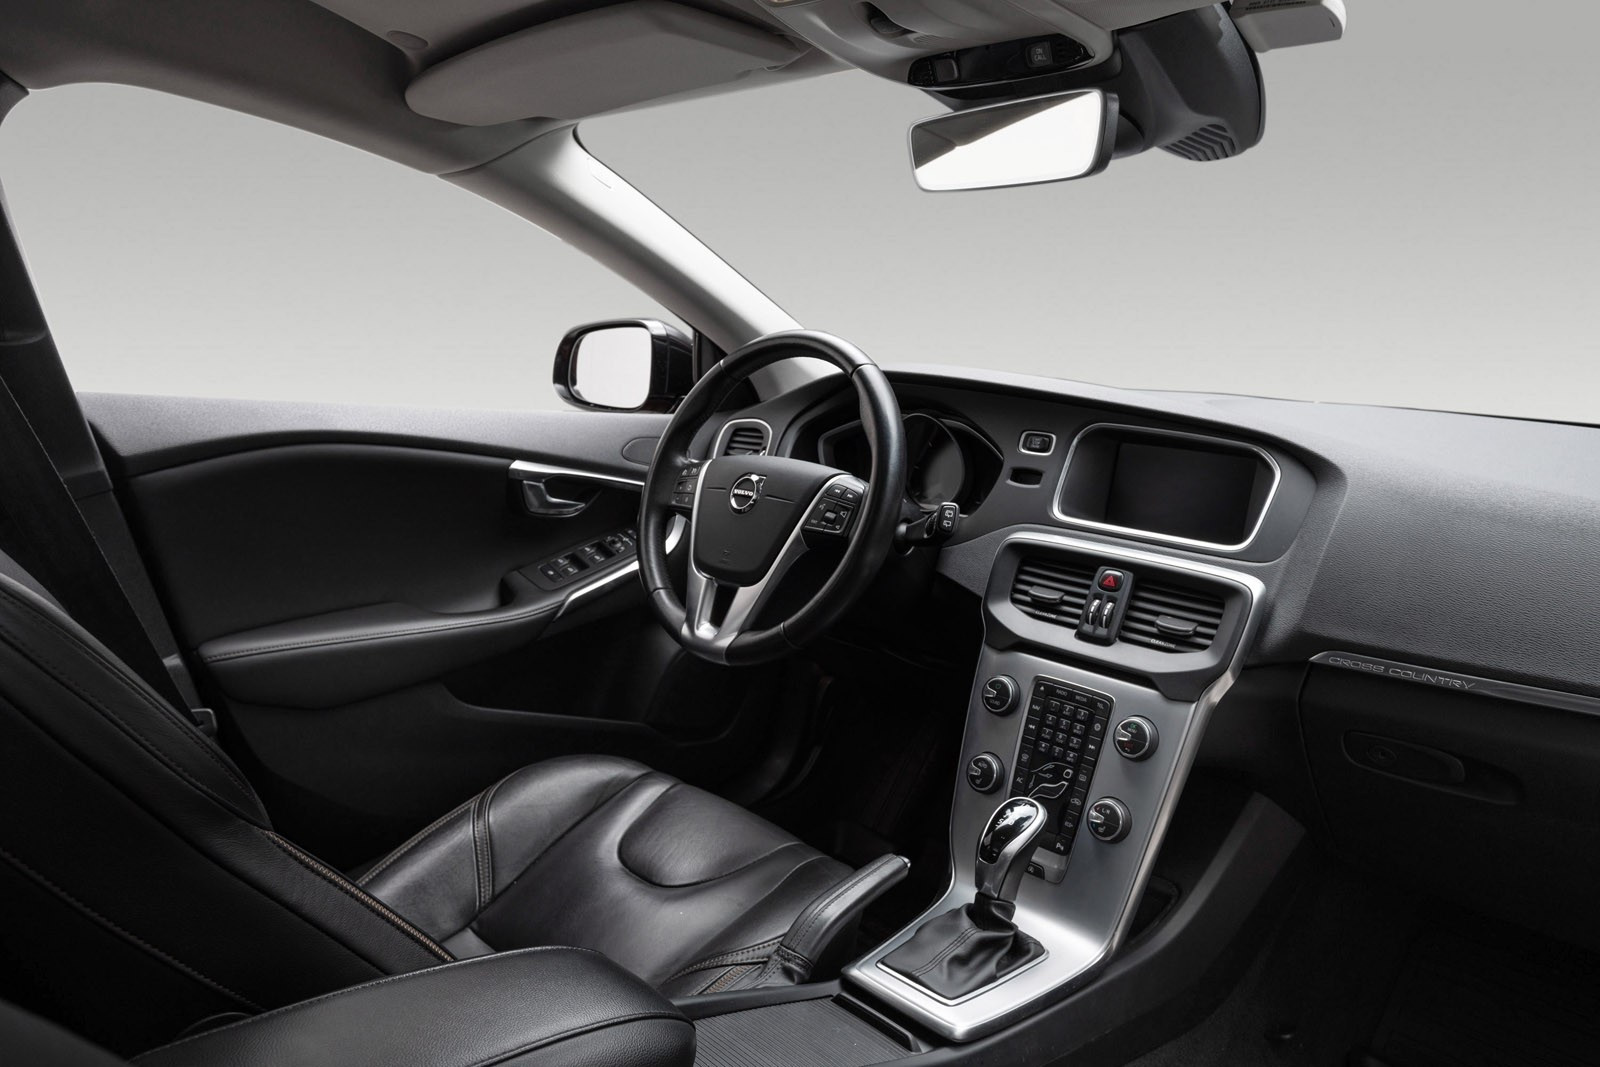 Denne har også Volvo on Call som gjør at man kan koble til bilen med app for fjernstyring av forvarming og låsing